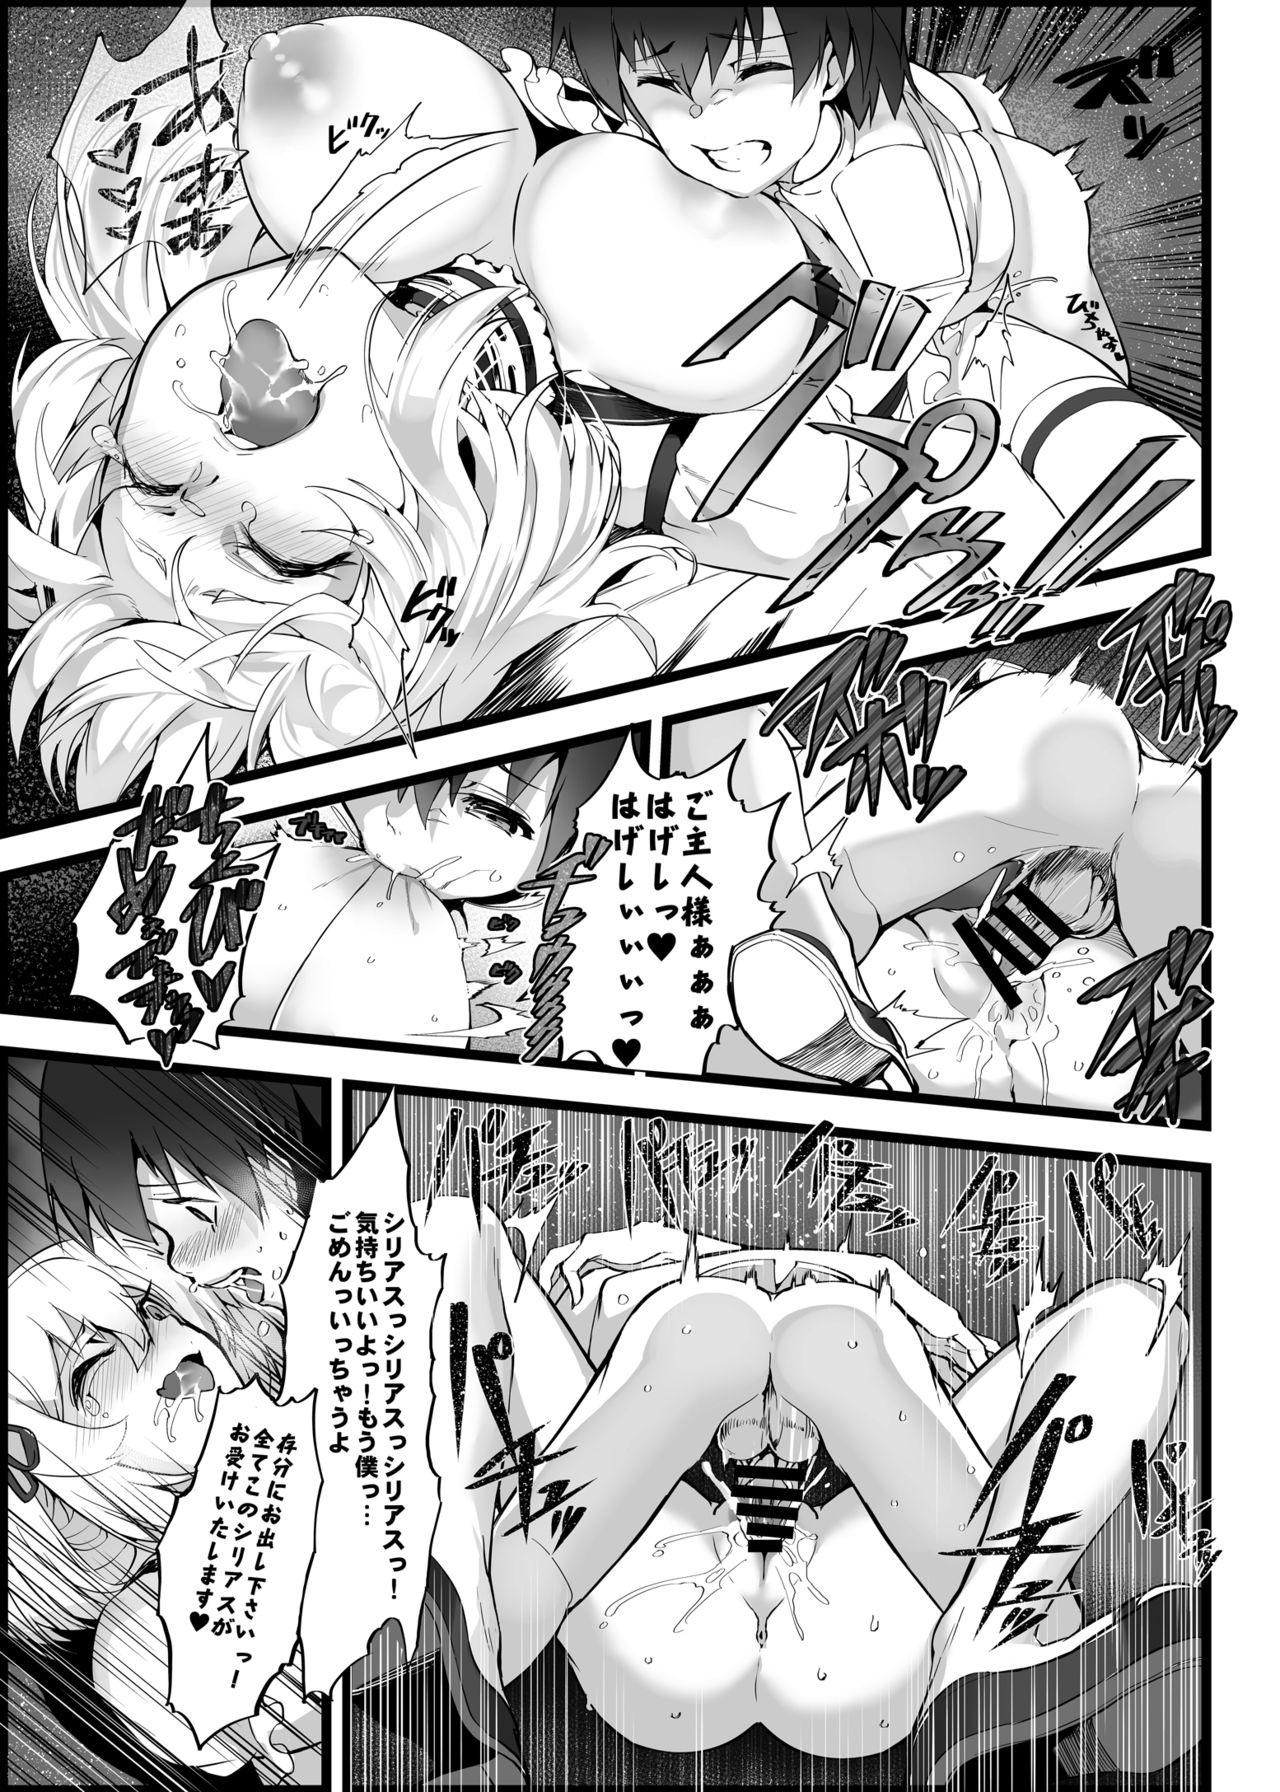 Gang Mukakin Shirei ni Yubiwa o Kawaseru Saigo no Houhou 5 - Azur lane Bwc - Page 8